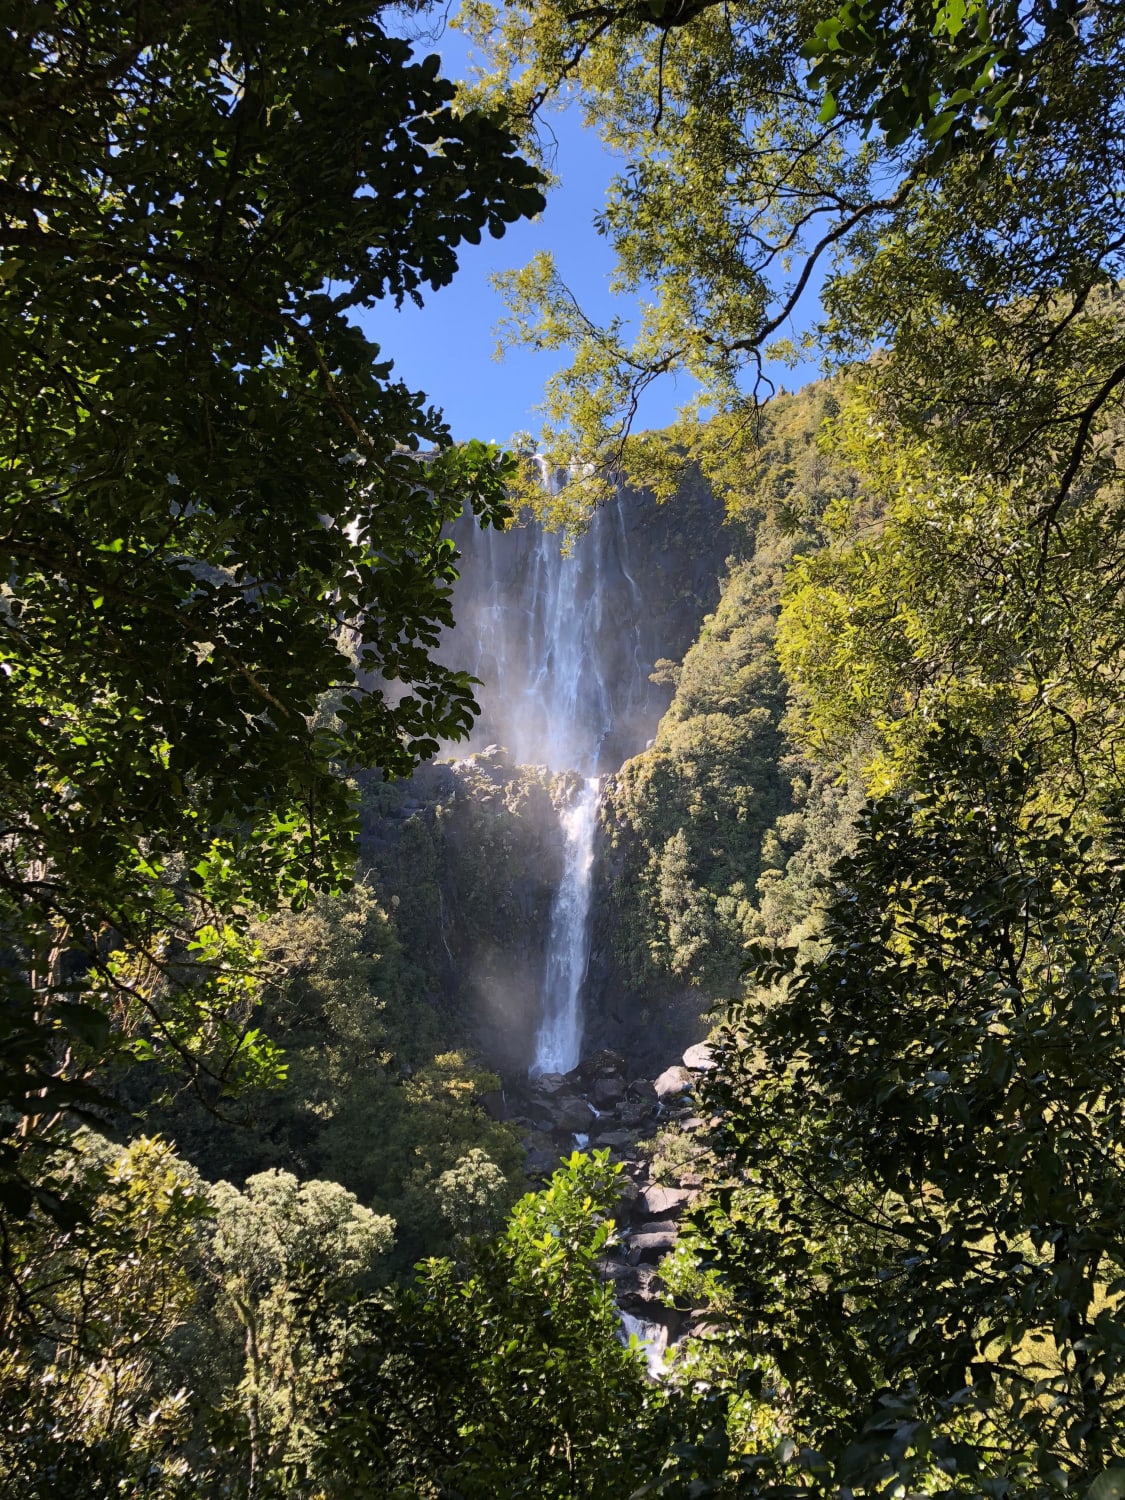 My favourite New Zealand waterfall - Wairere Falls 💦